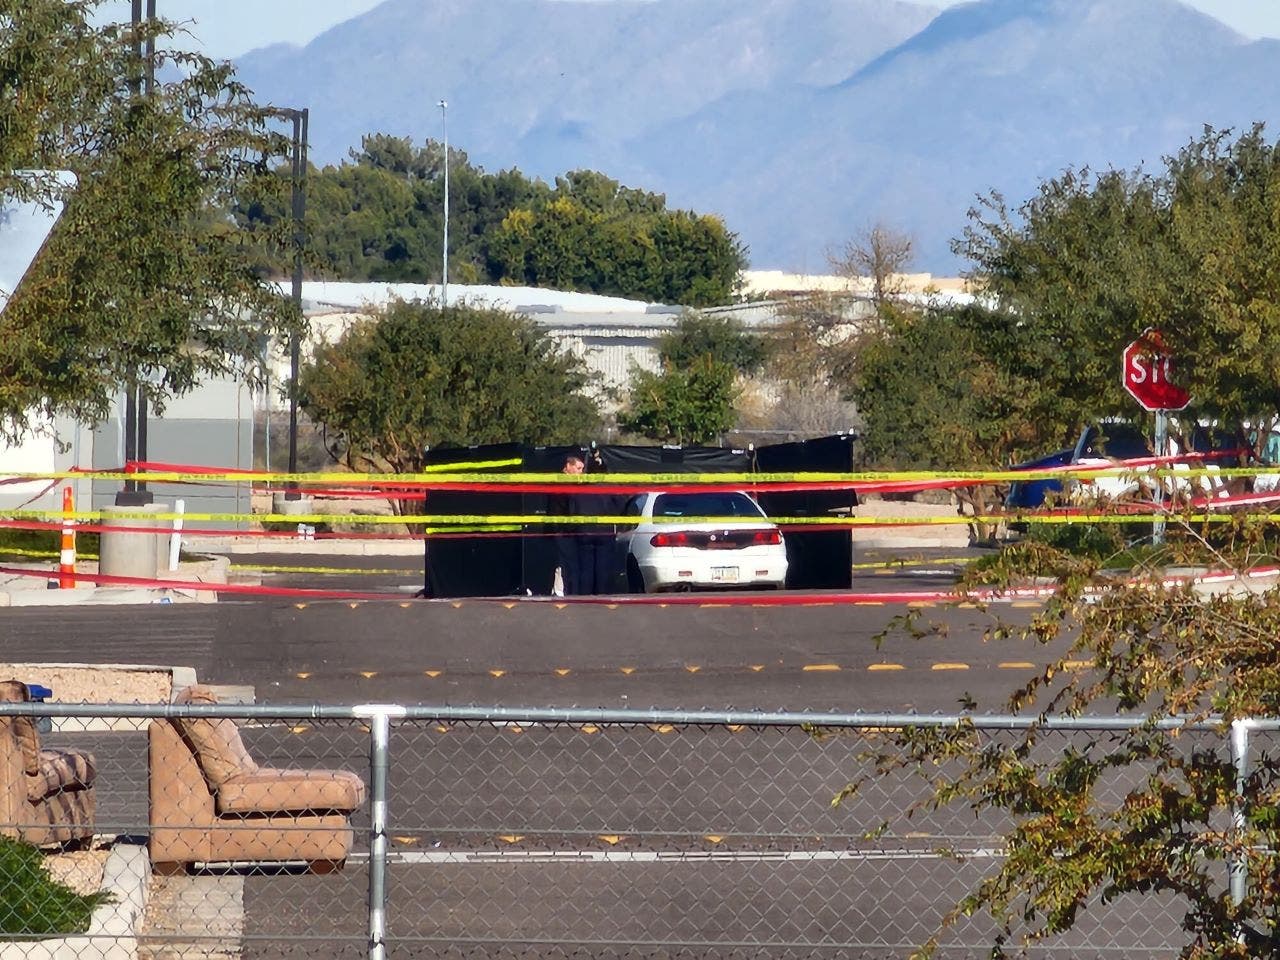 Armed Amazon employee stops shooter who opened fire at Arizona facility: 'good Samaritan'